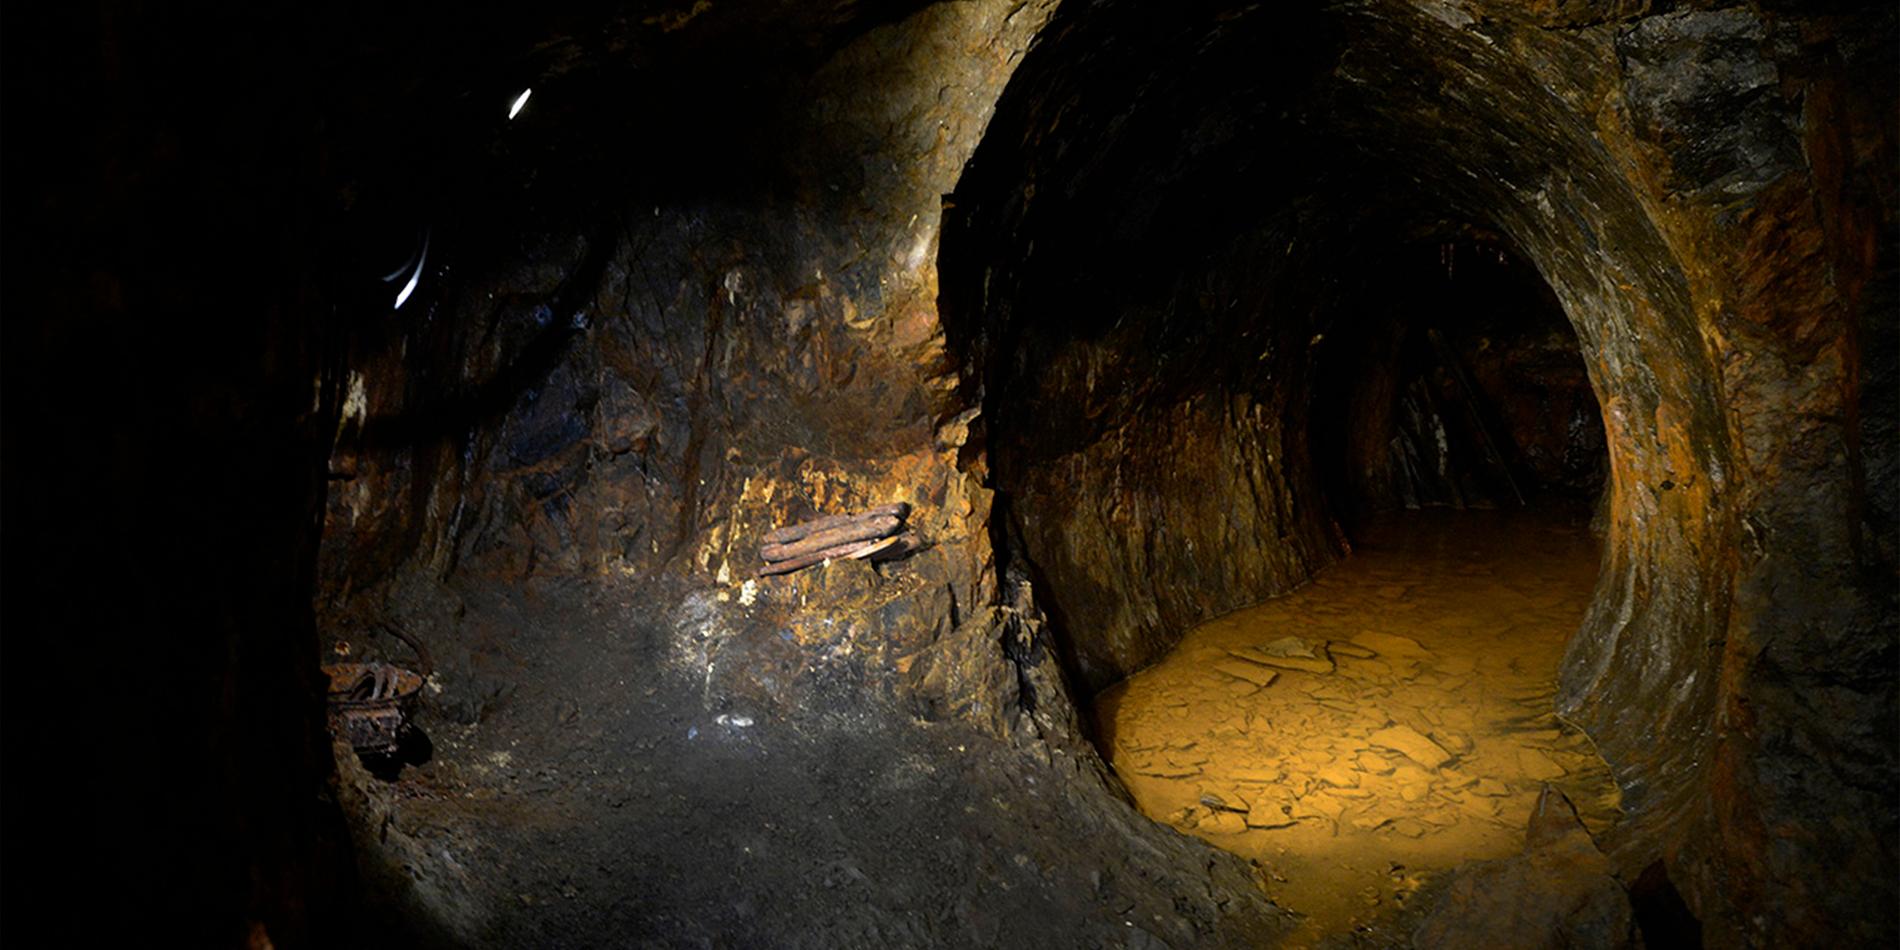 Loos koboltgruva i Hälsingland där man bröt kobolt från 1738, 1773 gick gruvan i konkurs med Loos Koboltverk. (I gruvan upptäcktes också metallen nickel – en världssensation.)